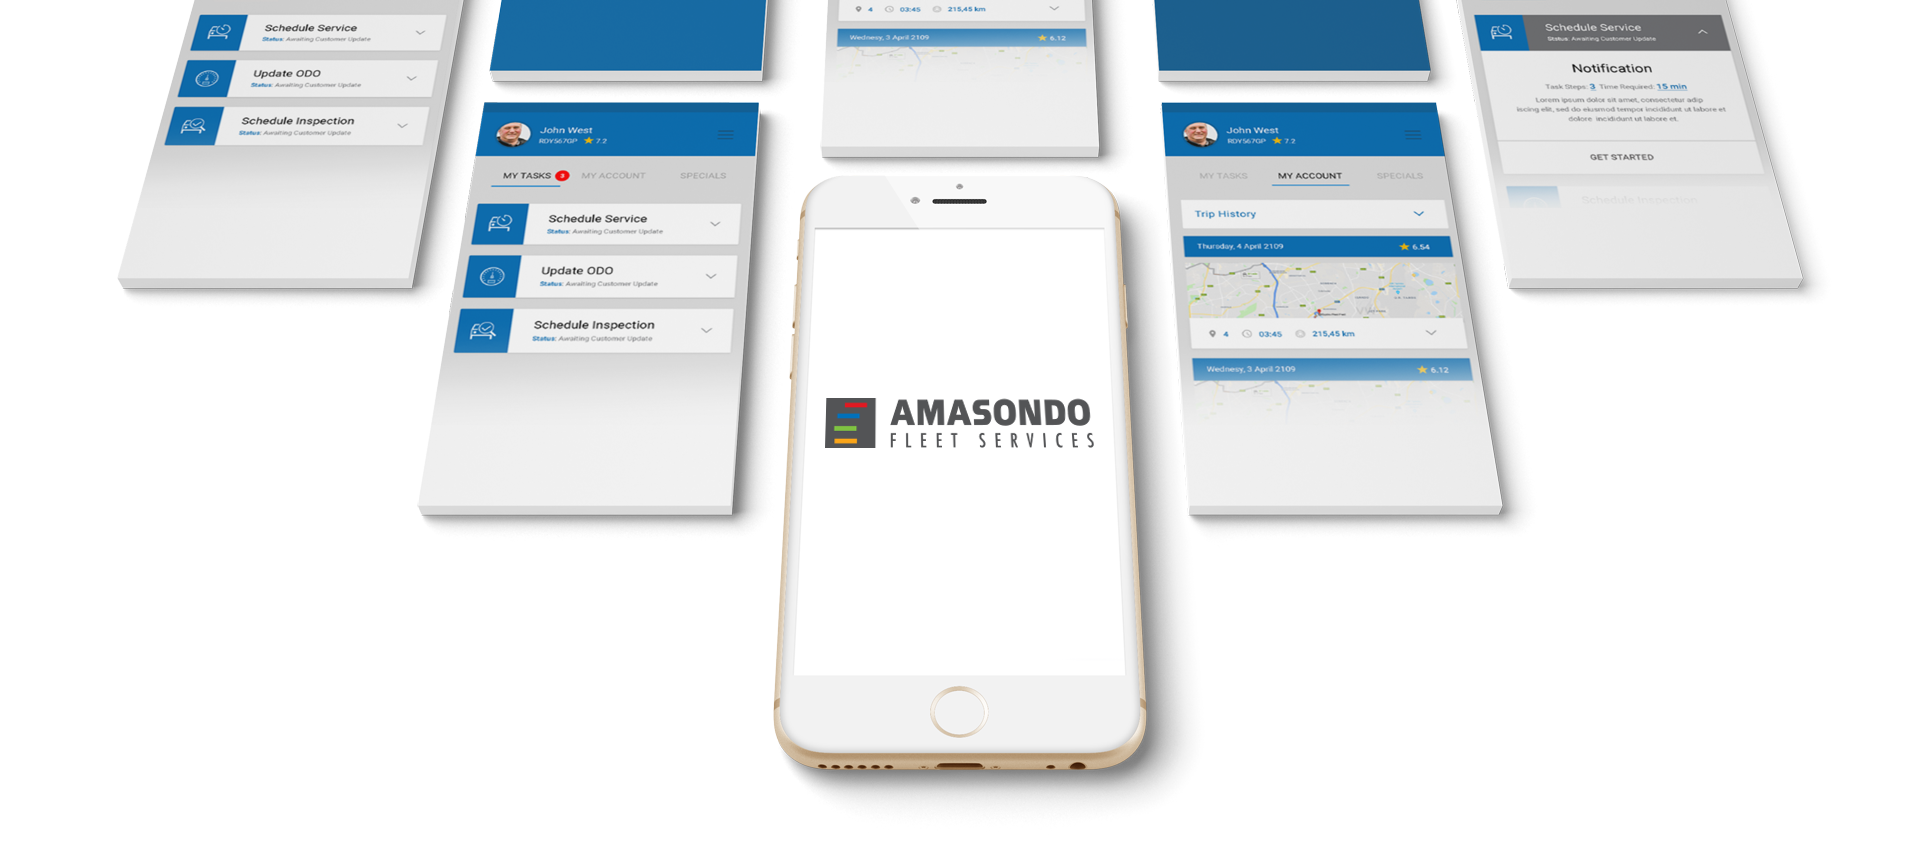 Fleet and vehicle tracking with the Amasondo app